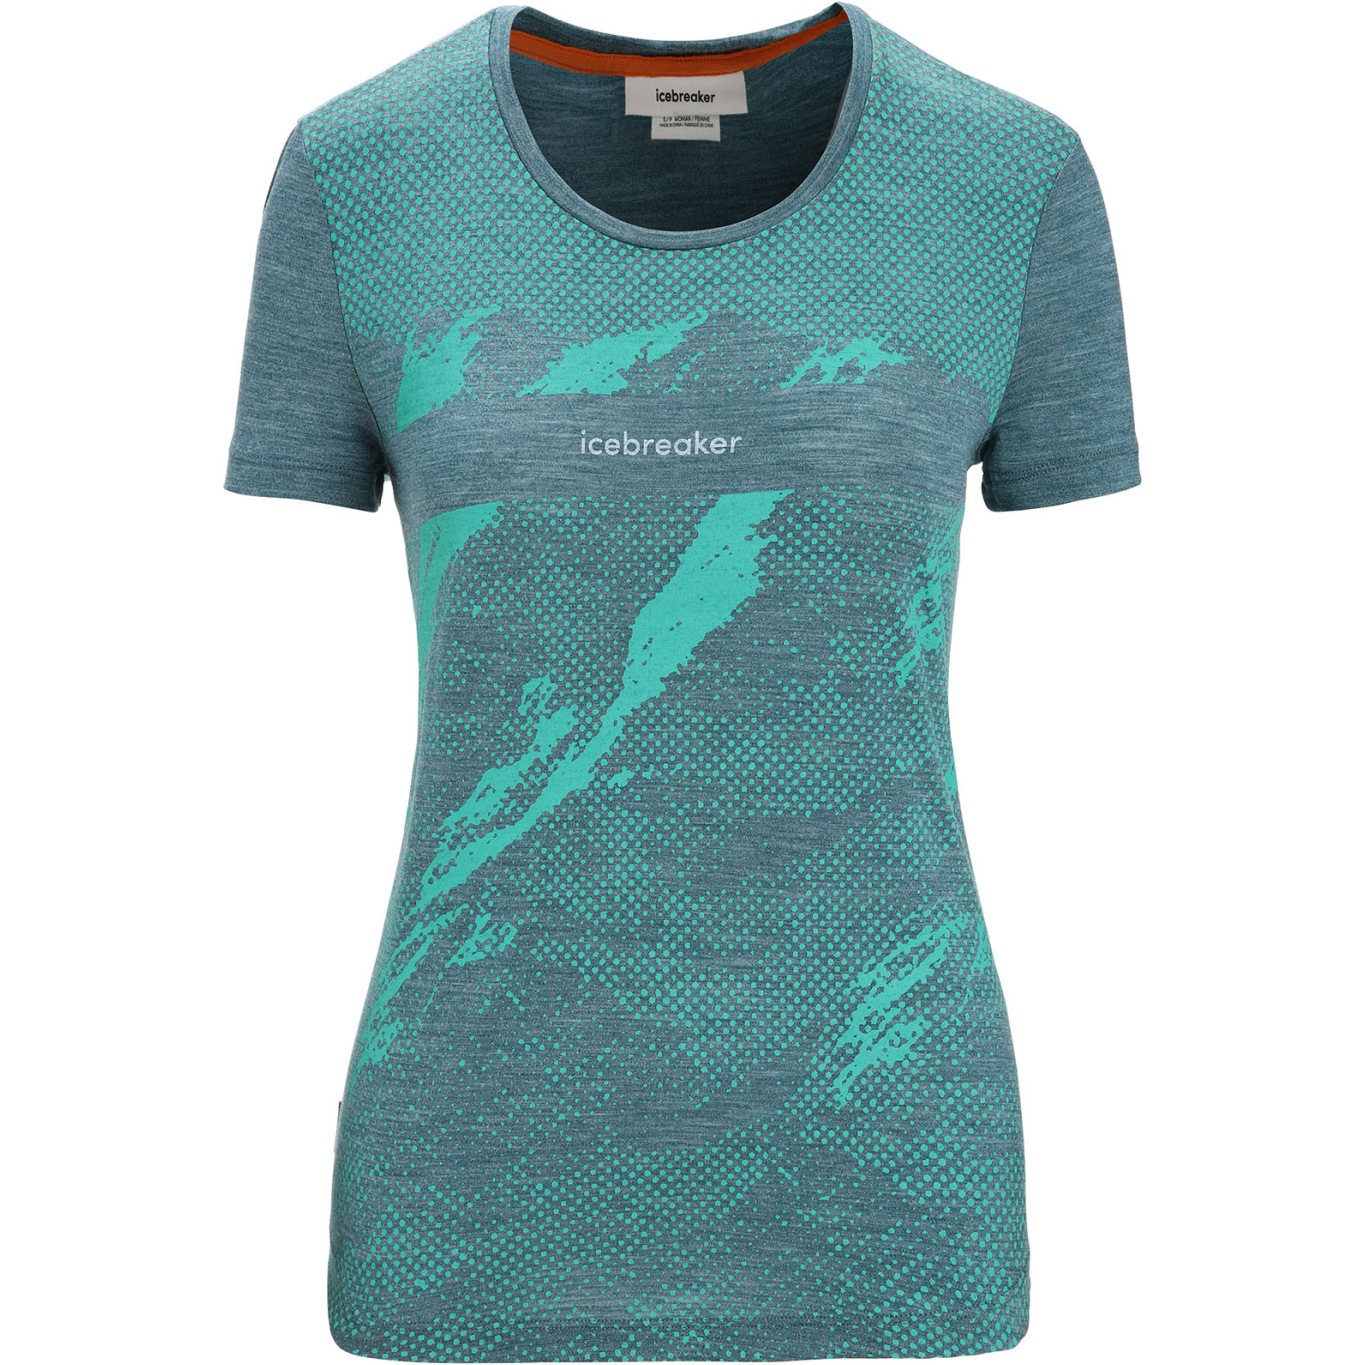 Produktbild von Icebreaker Sphere II Trail T-Shirt Damen - Green Glory Hthr